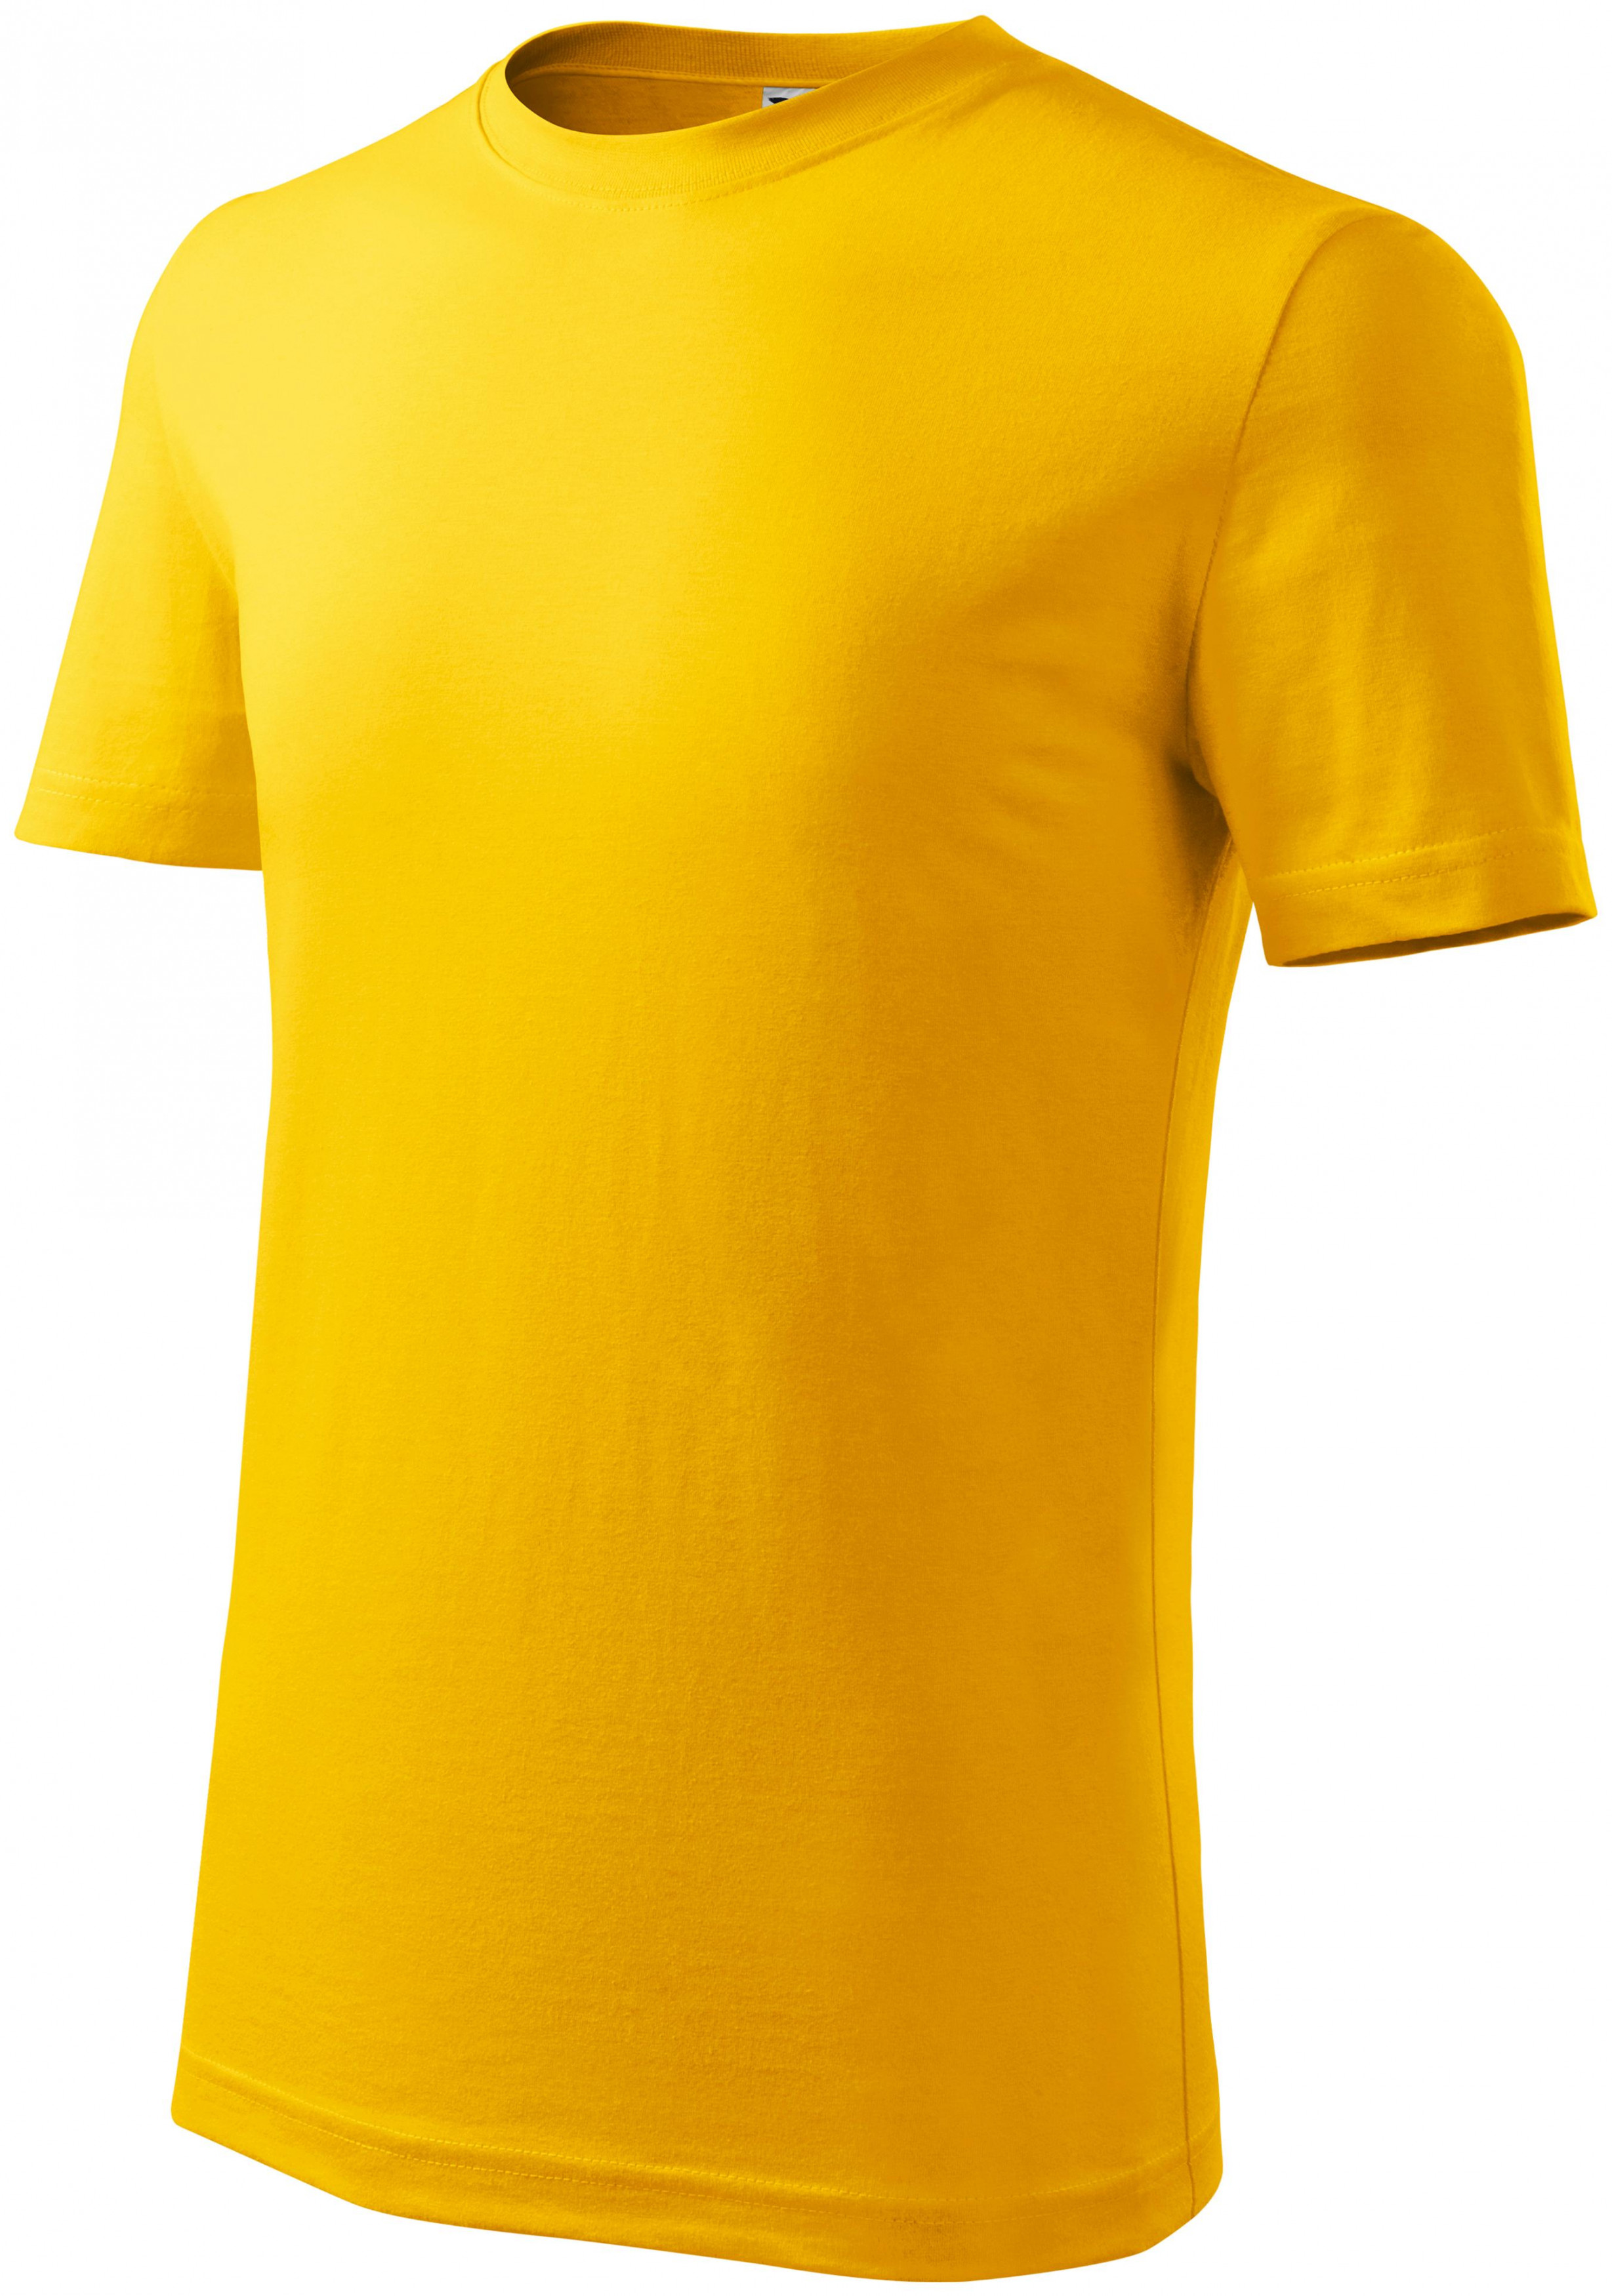 Detské tričko ľahšie, žltá, 158cm / 12rokov